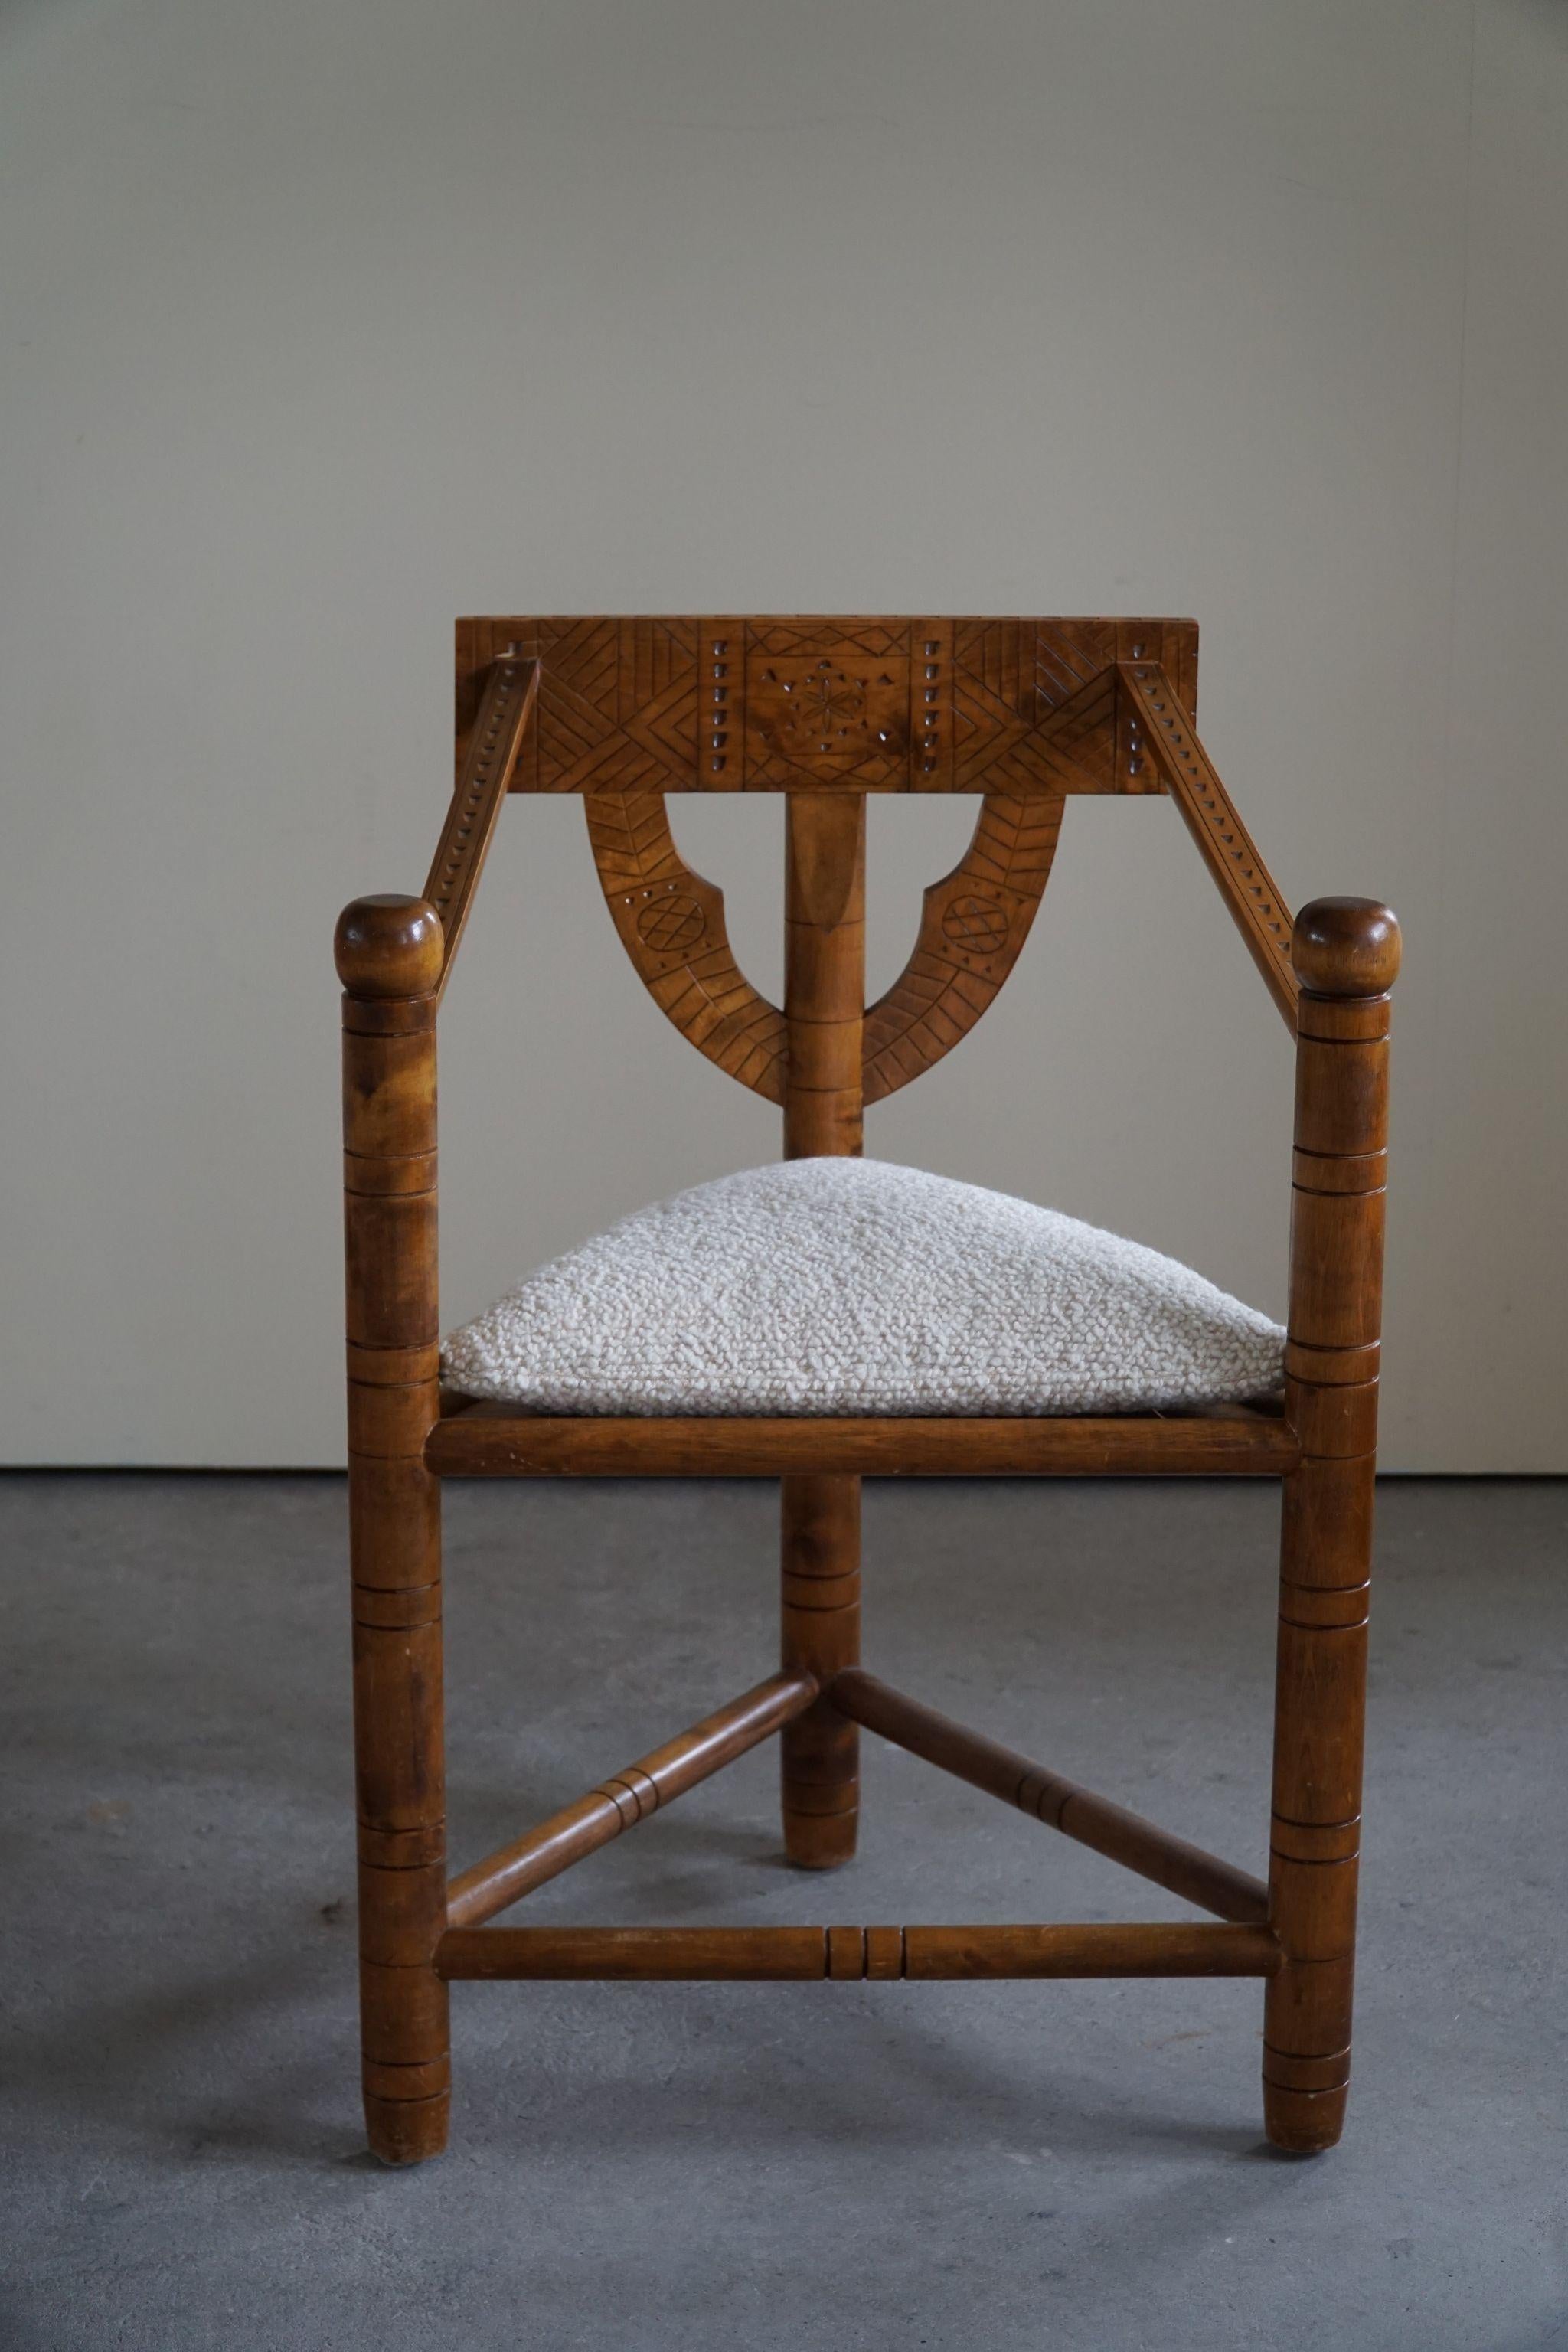 Un ensemble de 6 chaises Monk vintage sculpturales en chêne massif. Sculptée par un ébéniste suédois au début du 20e siècle. Un ensemble wabi sabi authentique en bon état général avec une belle patine. 
Sièges retapissés en bouclé de luxe, Storr